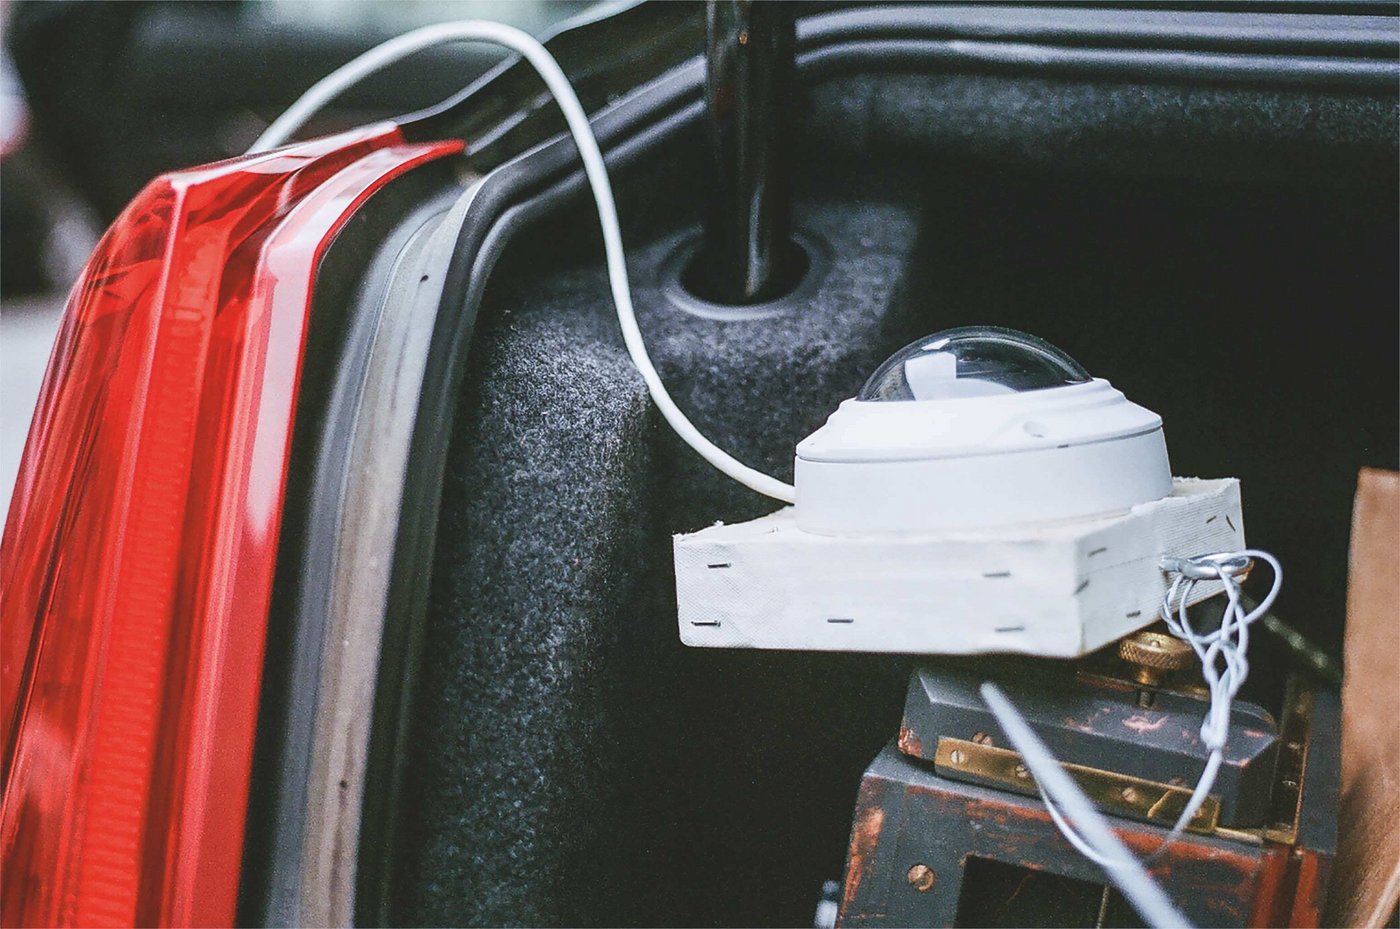 Bild von einer Überwachungskamera in einem Kofferraum eines Autos.